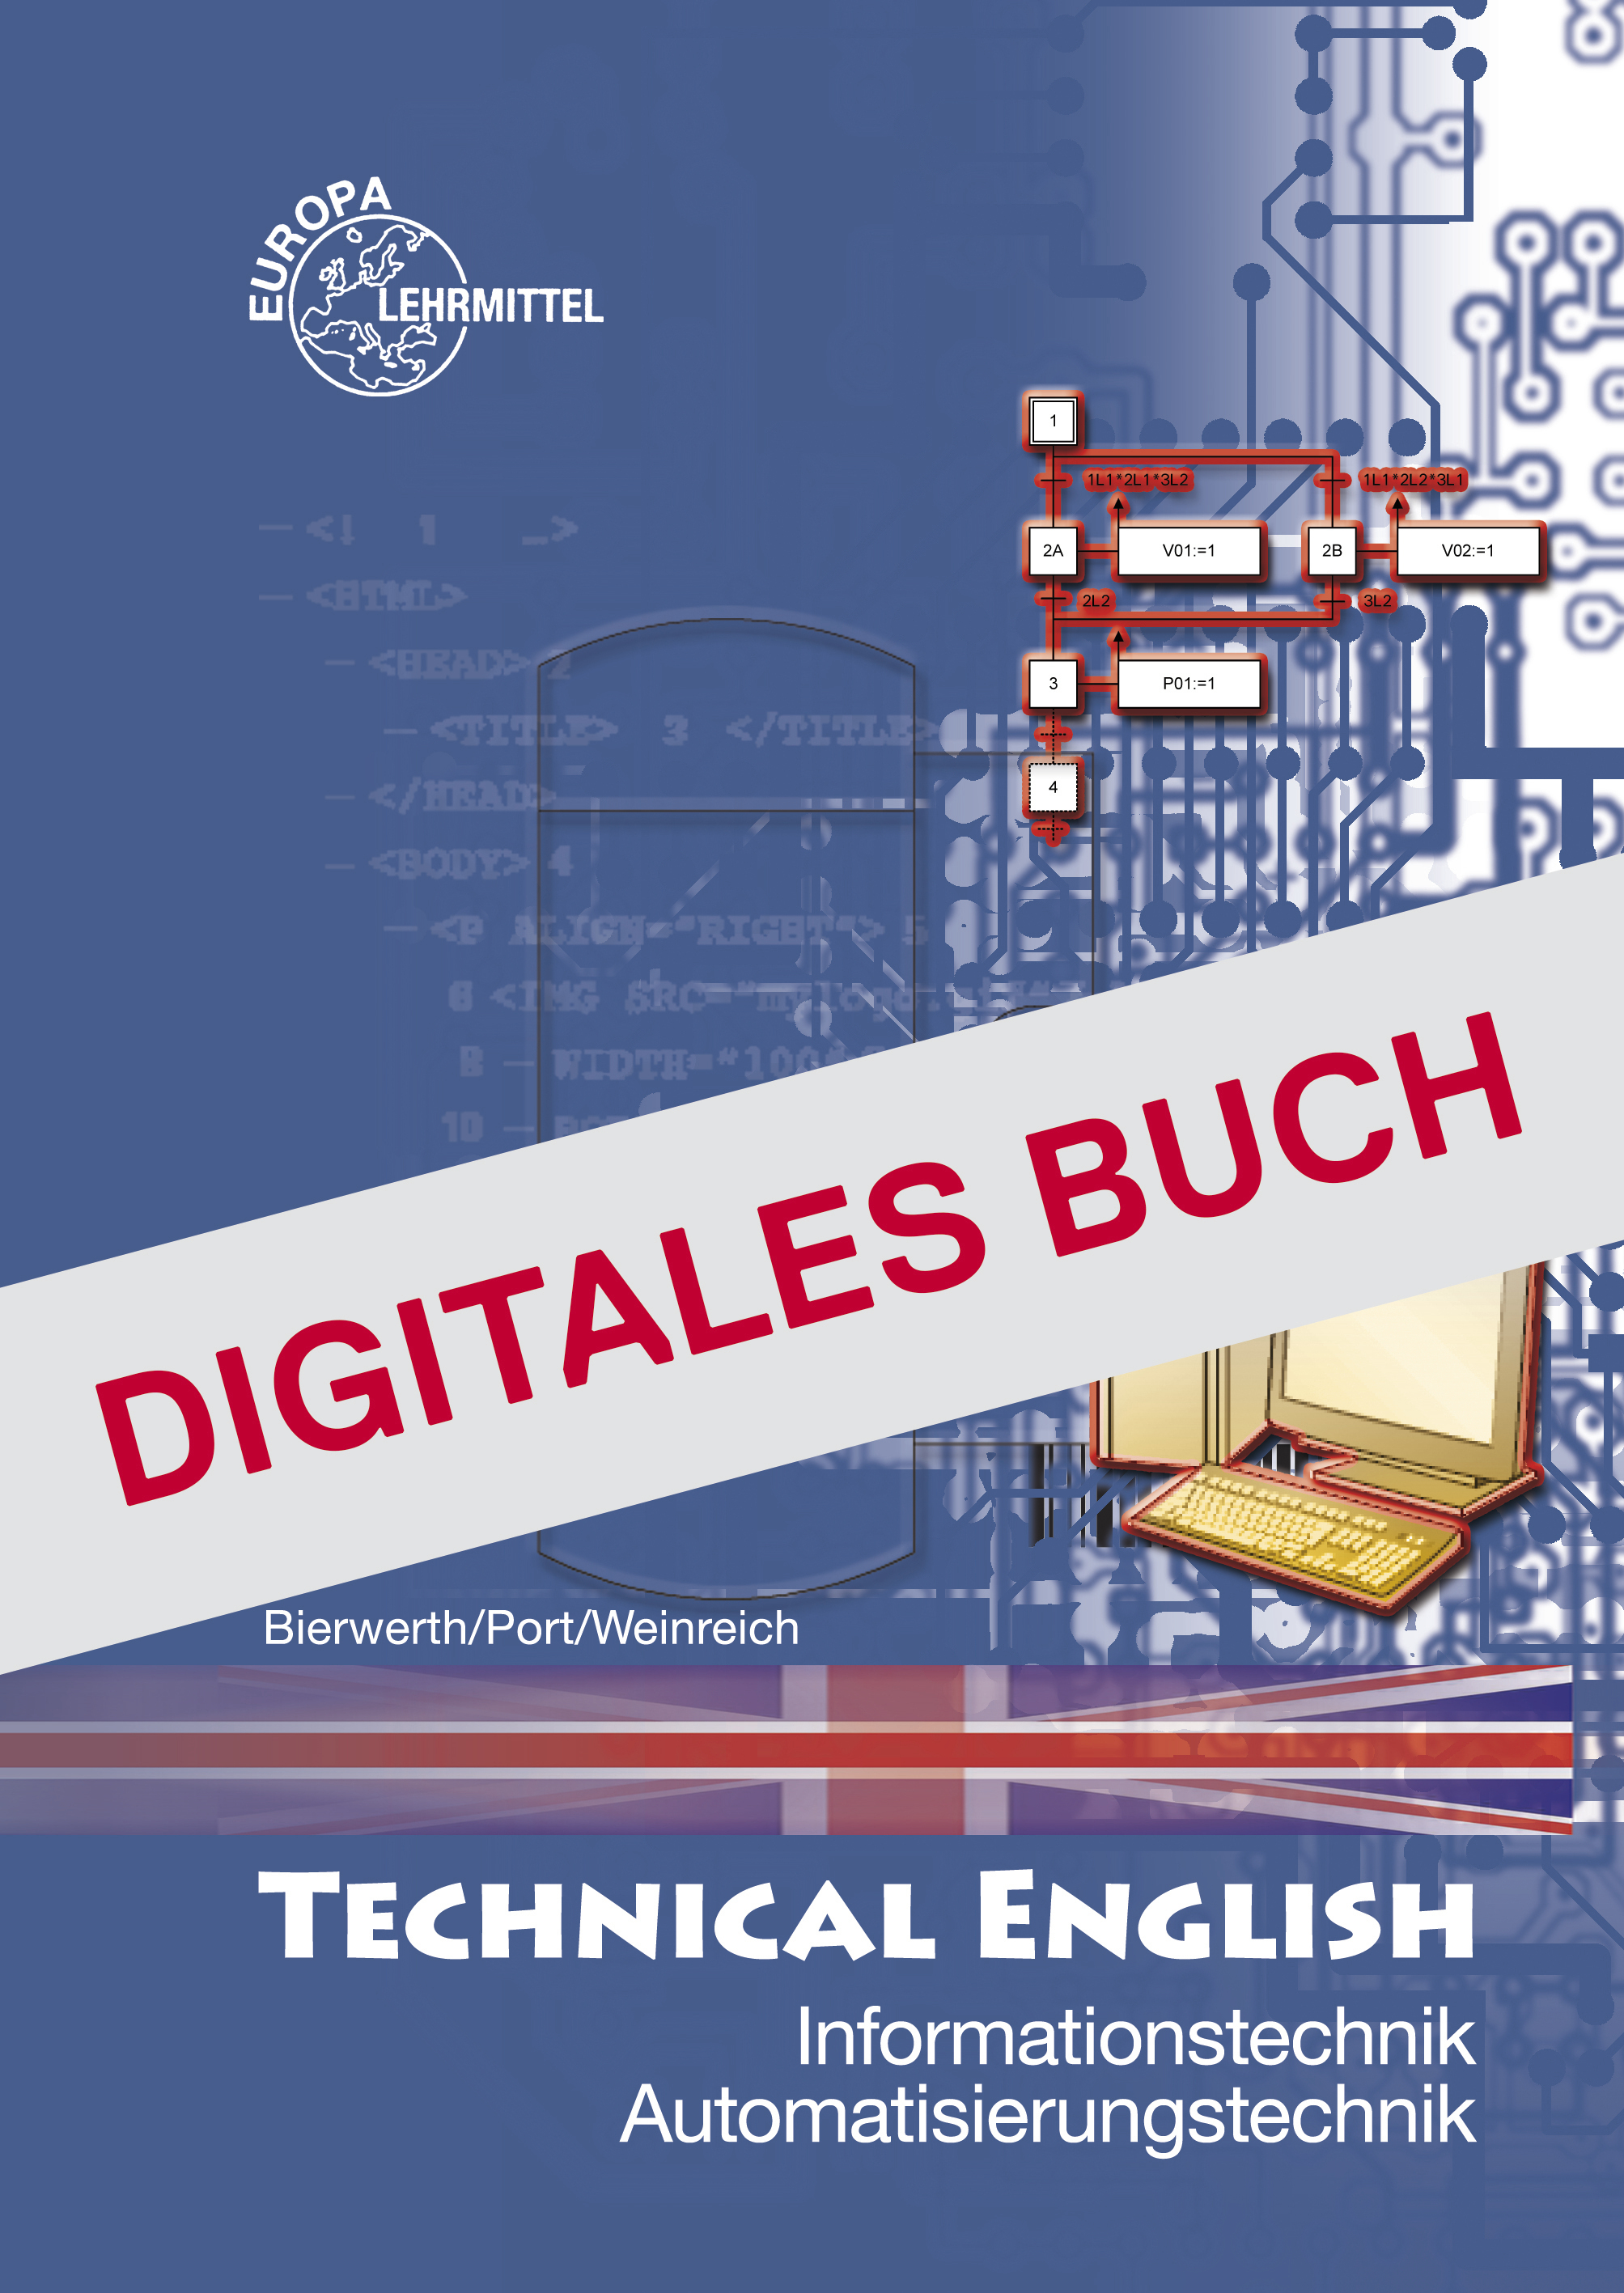 Technical English - Informationstechnik, Automatisierungstechnik -Digitales Buch